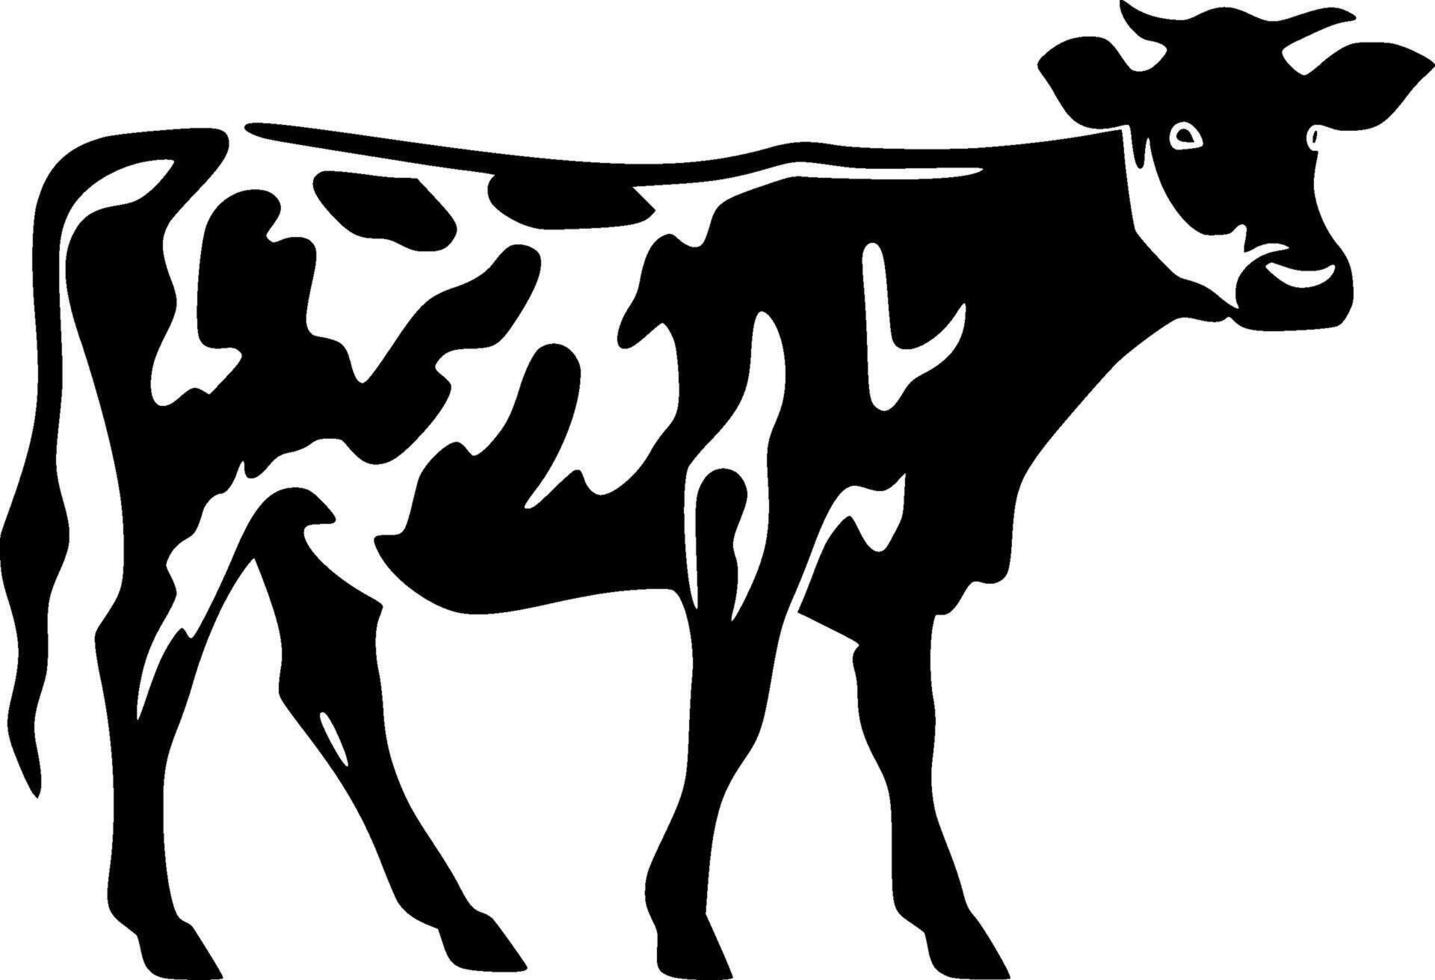 Kuh, schwarz und Weiß Vektor Illustration